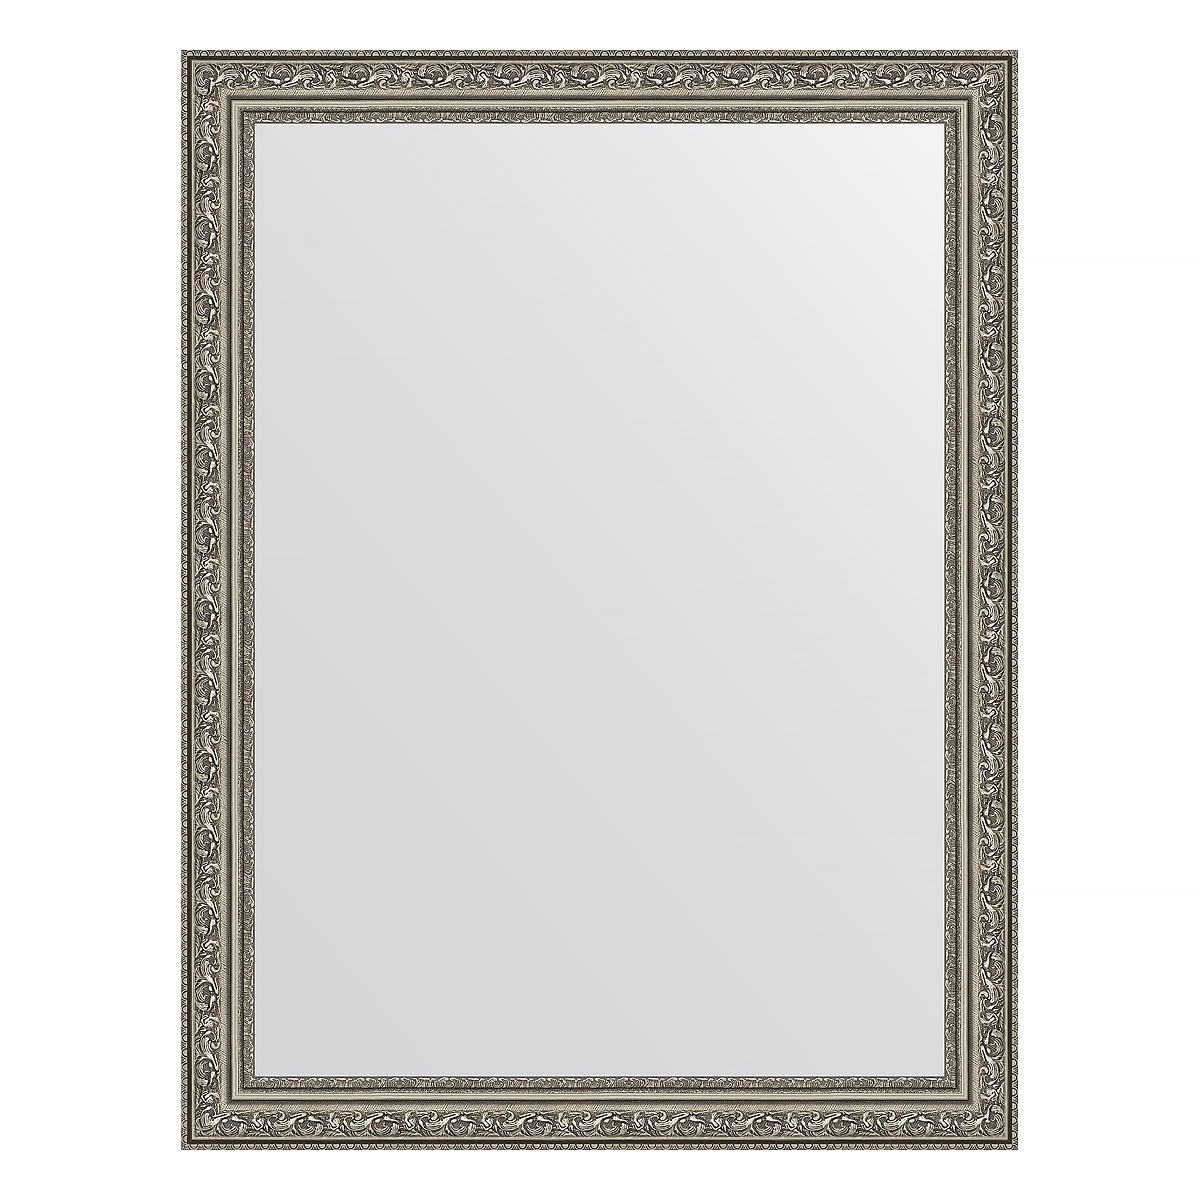 Зеркало в багетной раме Evoform виньетка состаренное серебро 56 мм 64х84 см зеркало 45х55 см виньетка античное серебро